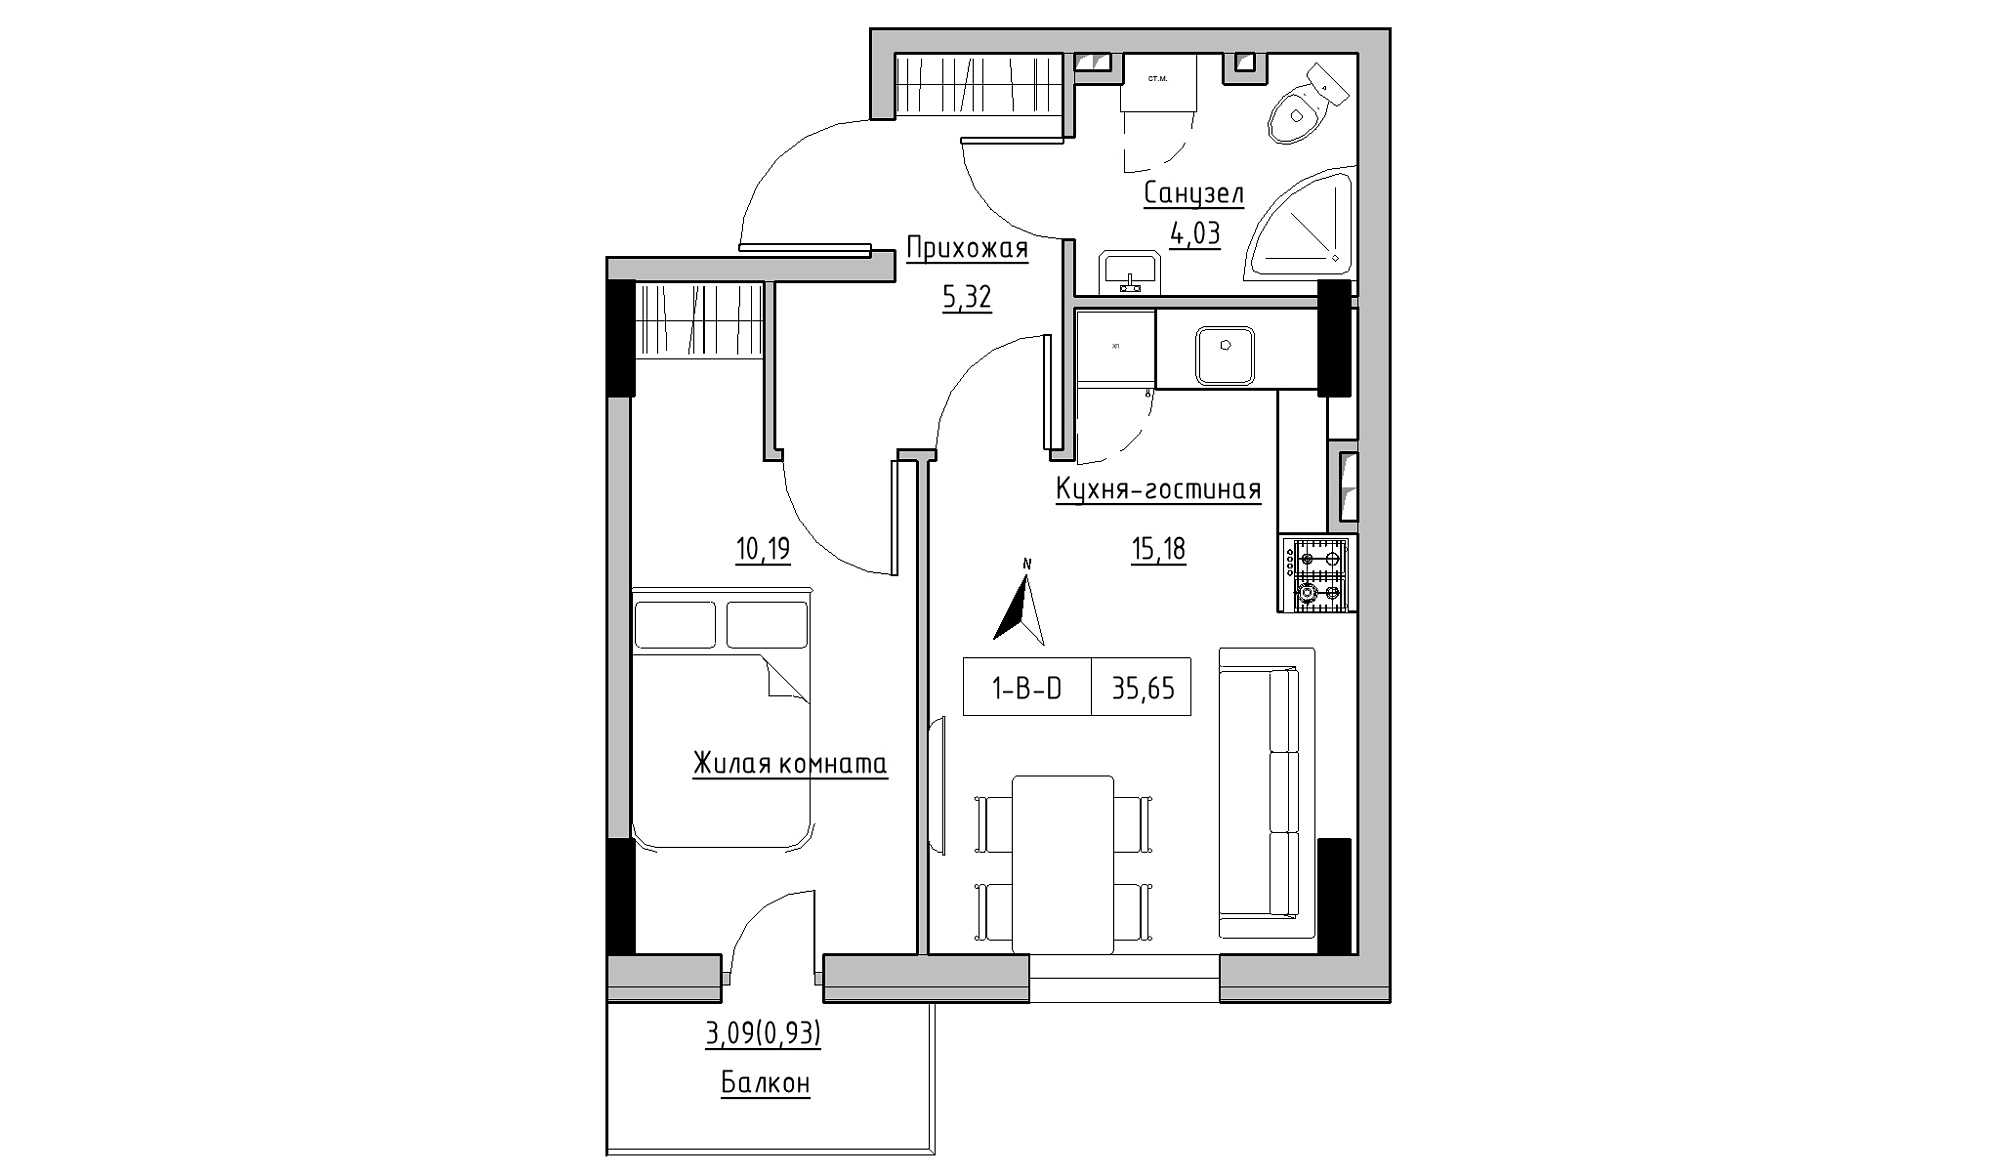 Планировка 1-к квартира площей 35.65м2, KS-025-02/0011.